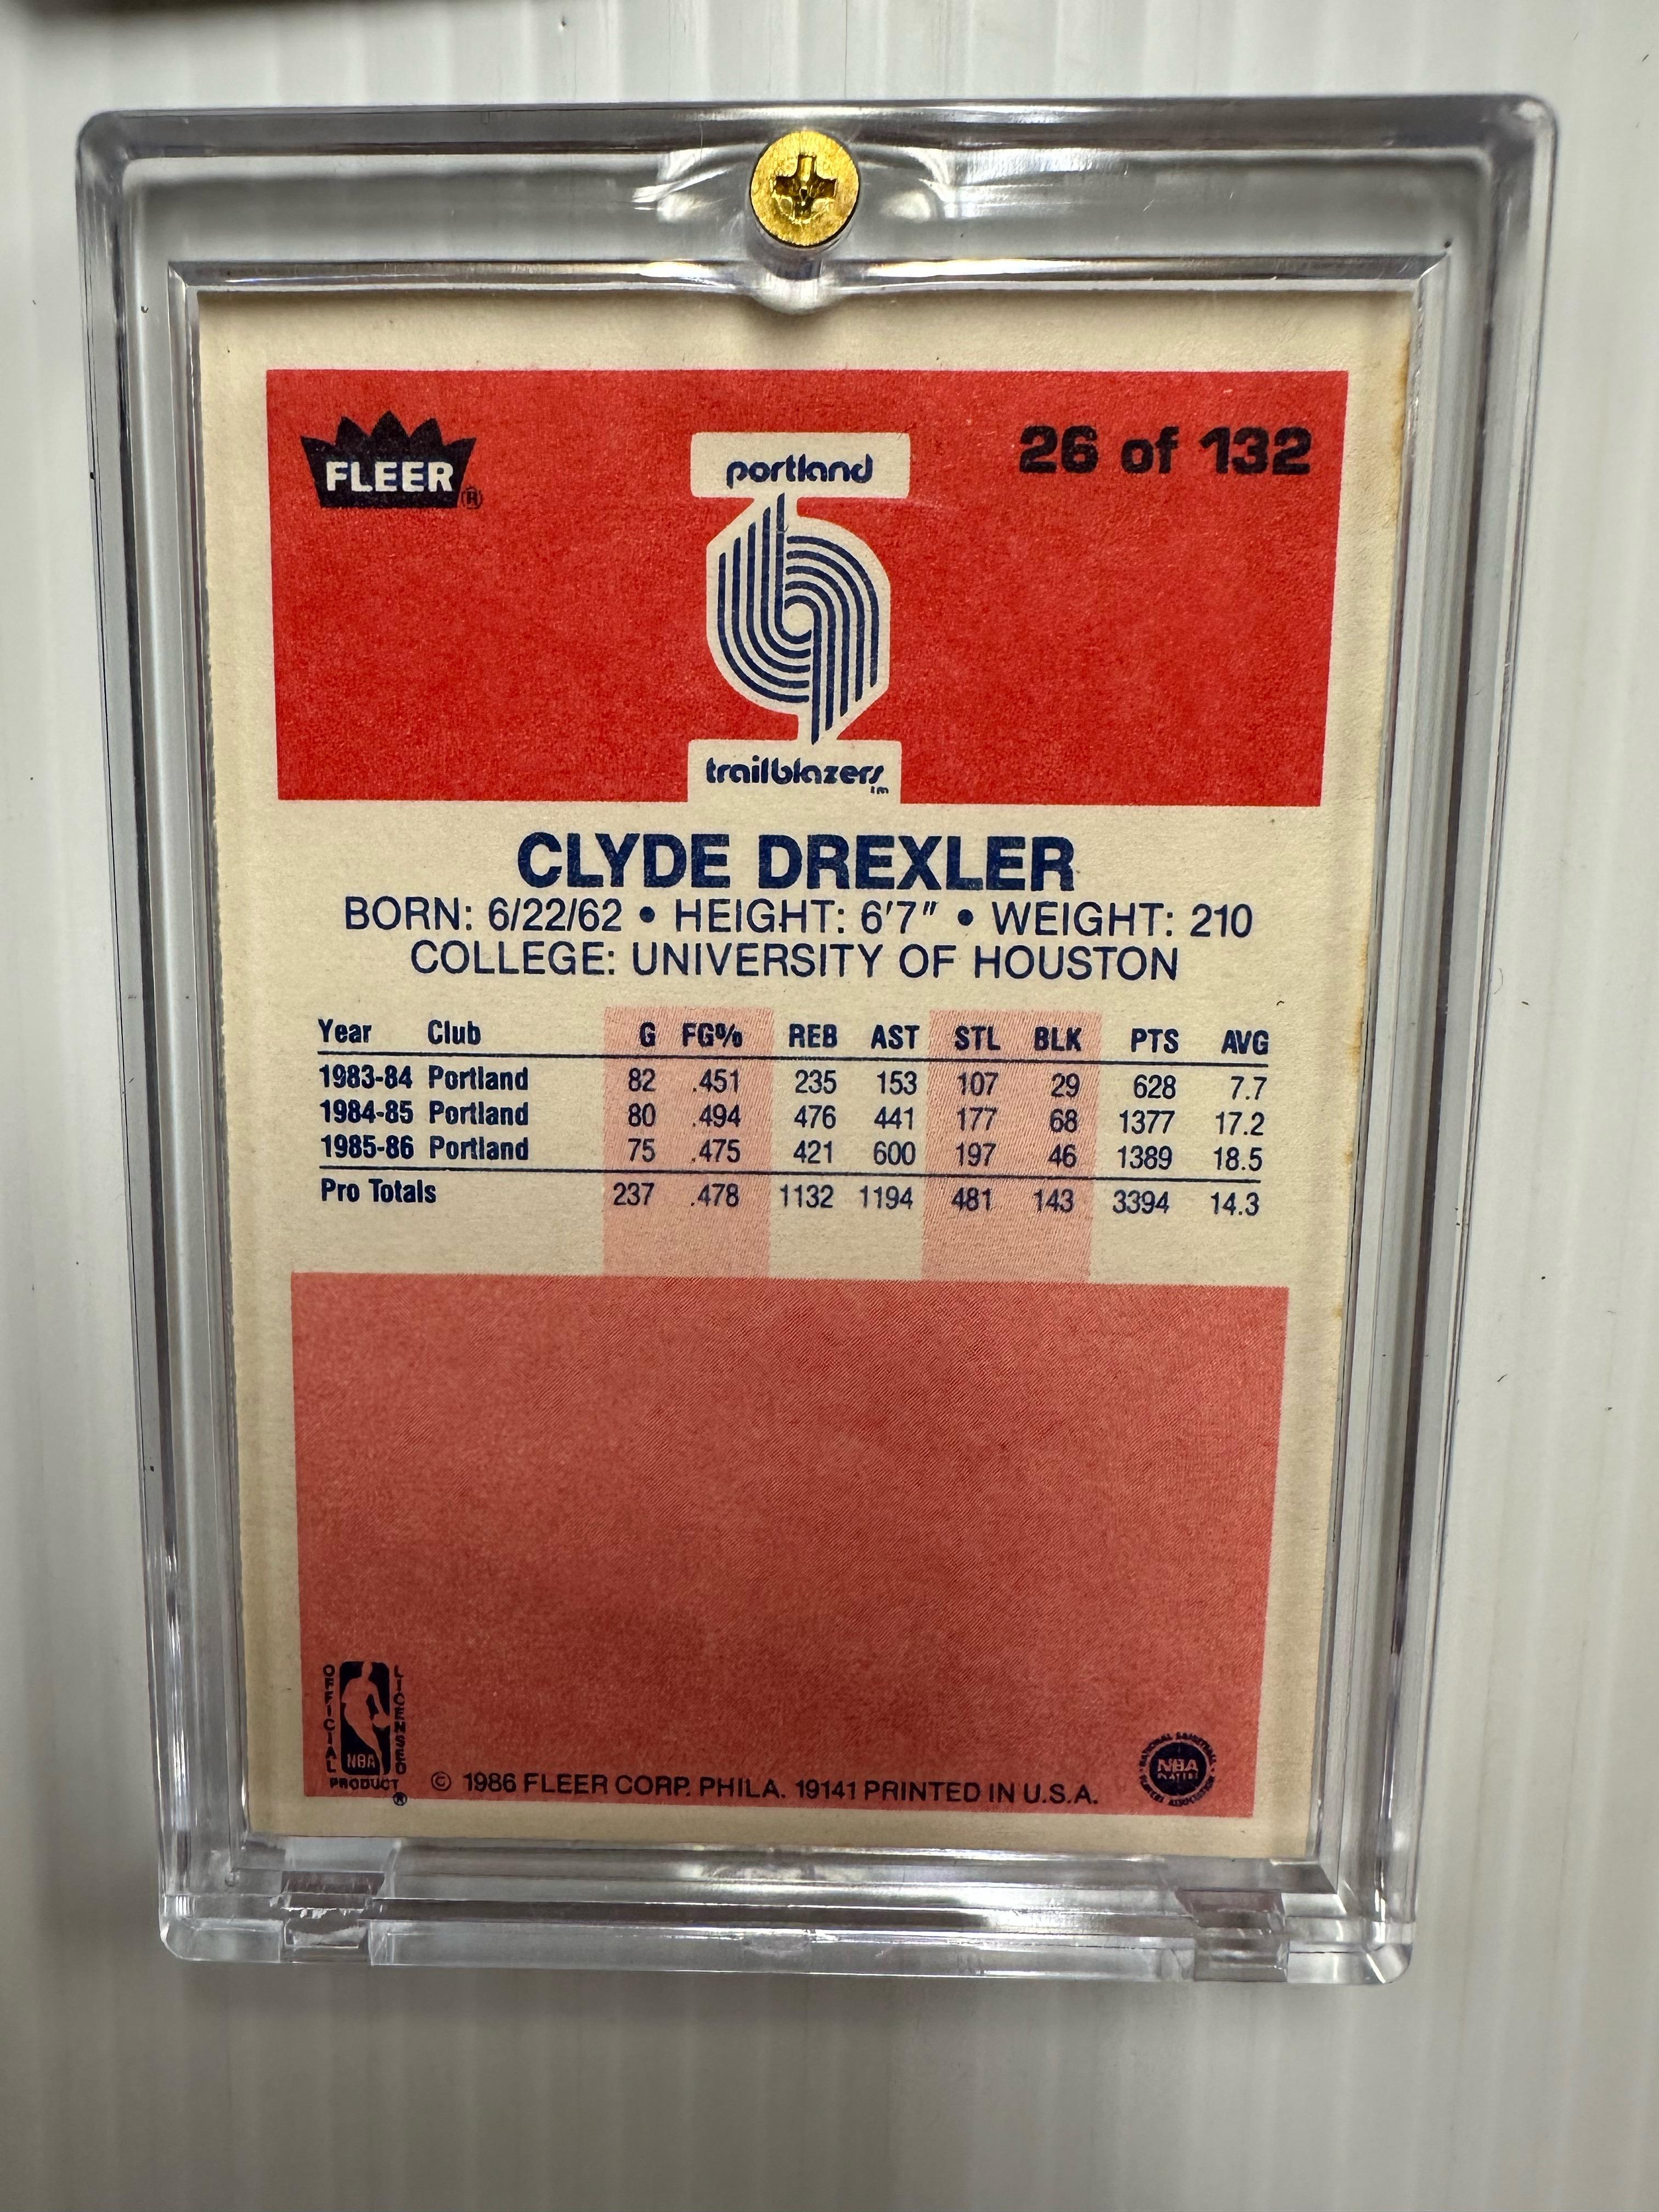 1986 FLEER CLYDE DREXLER ROOKIE CARD